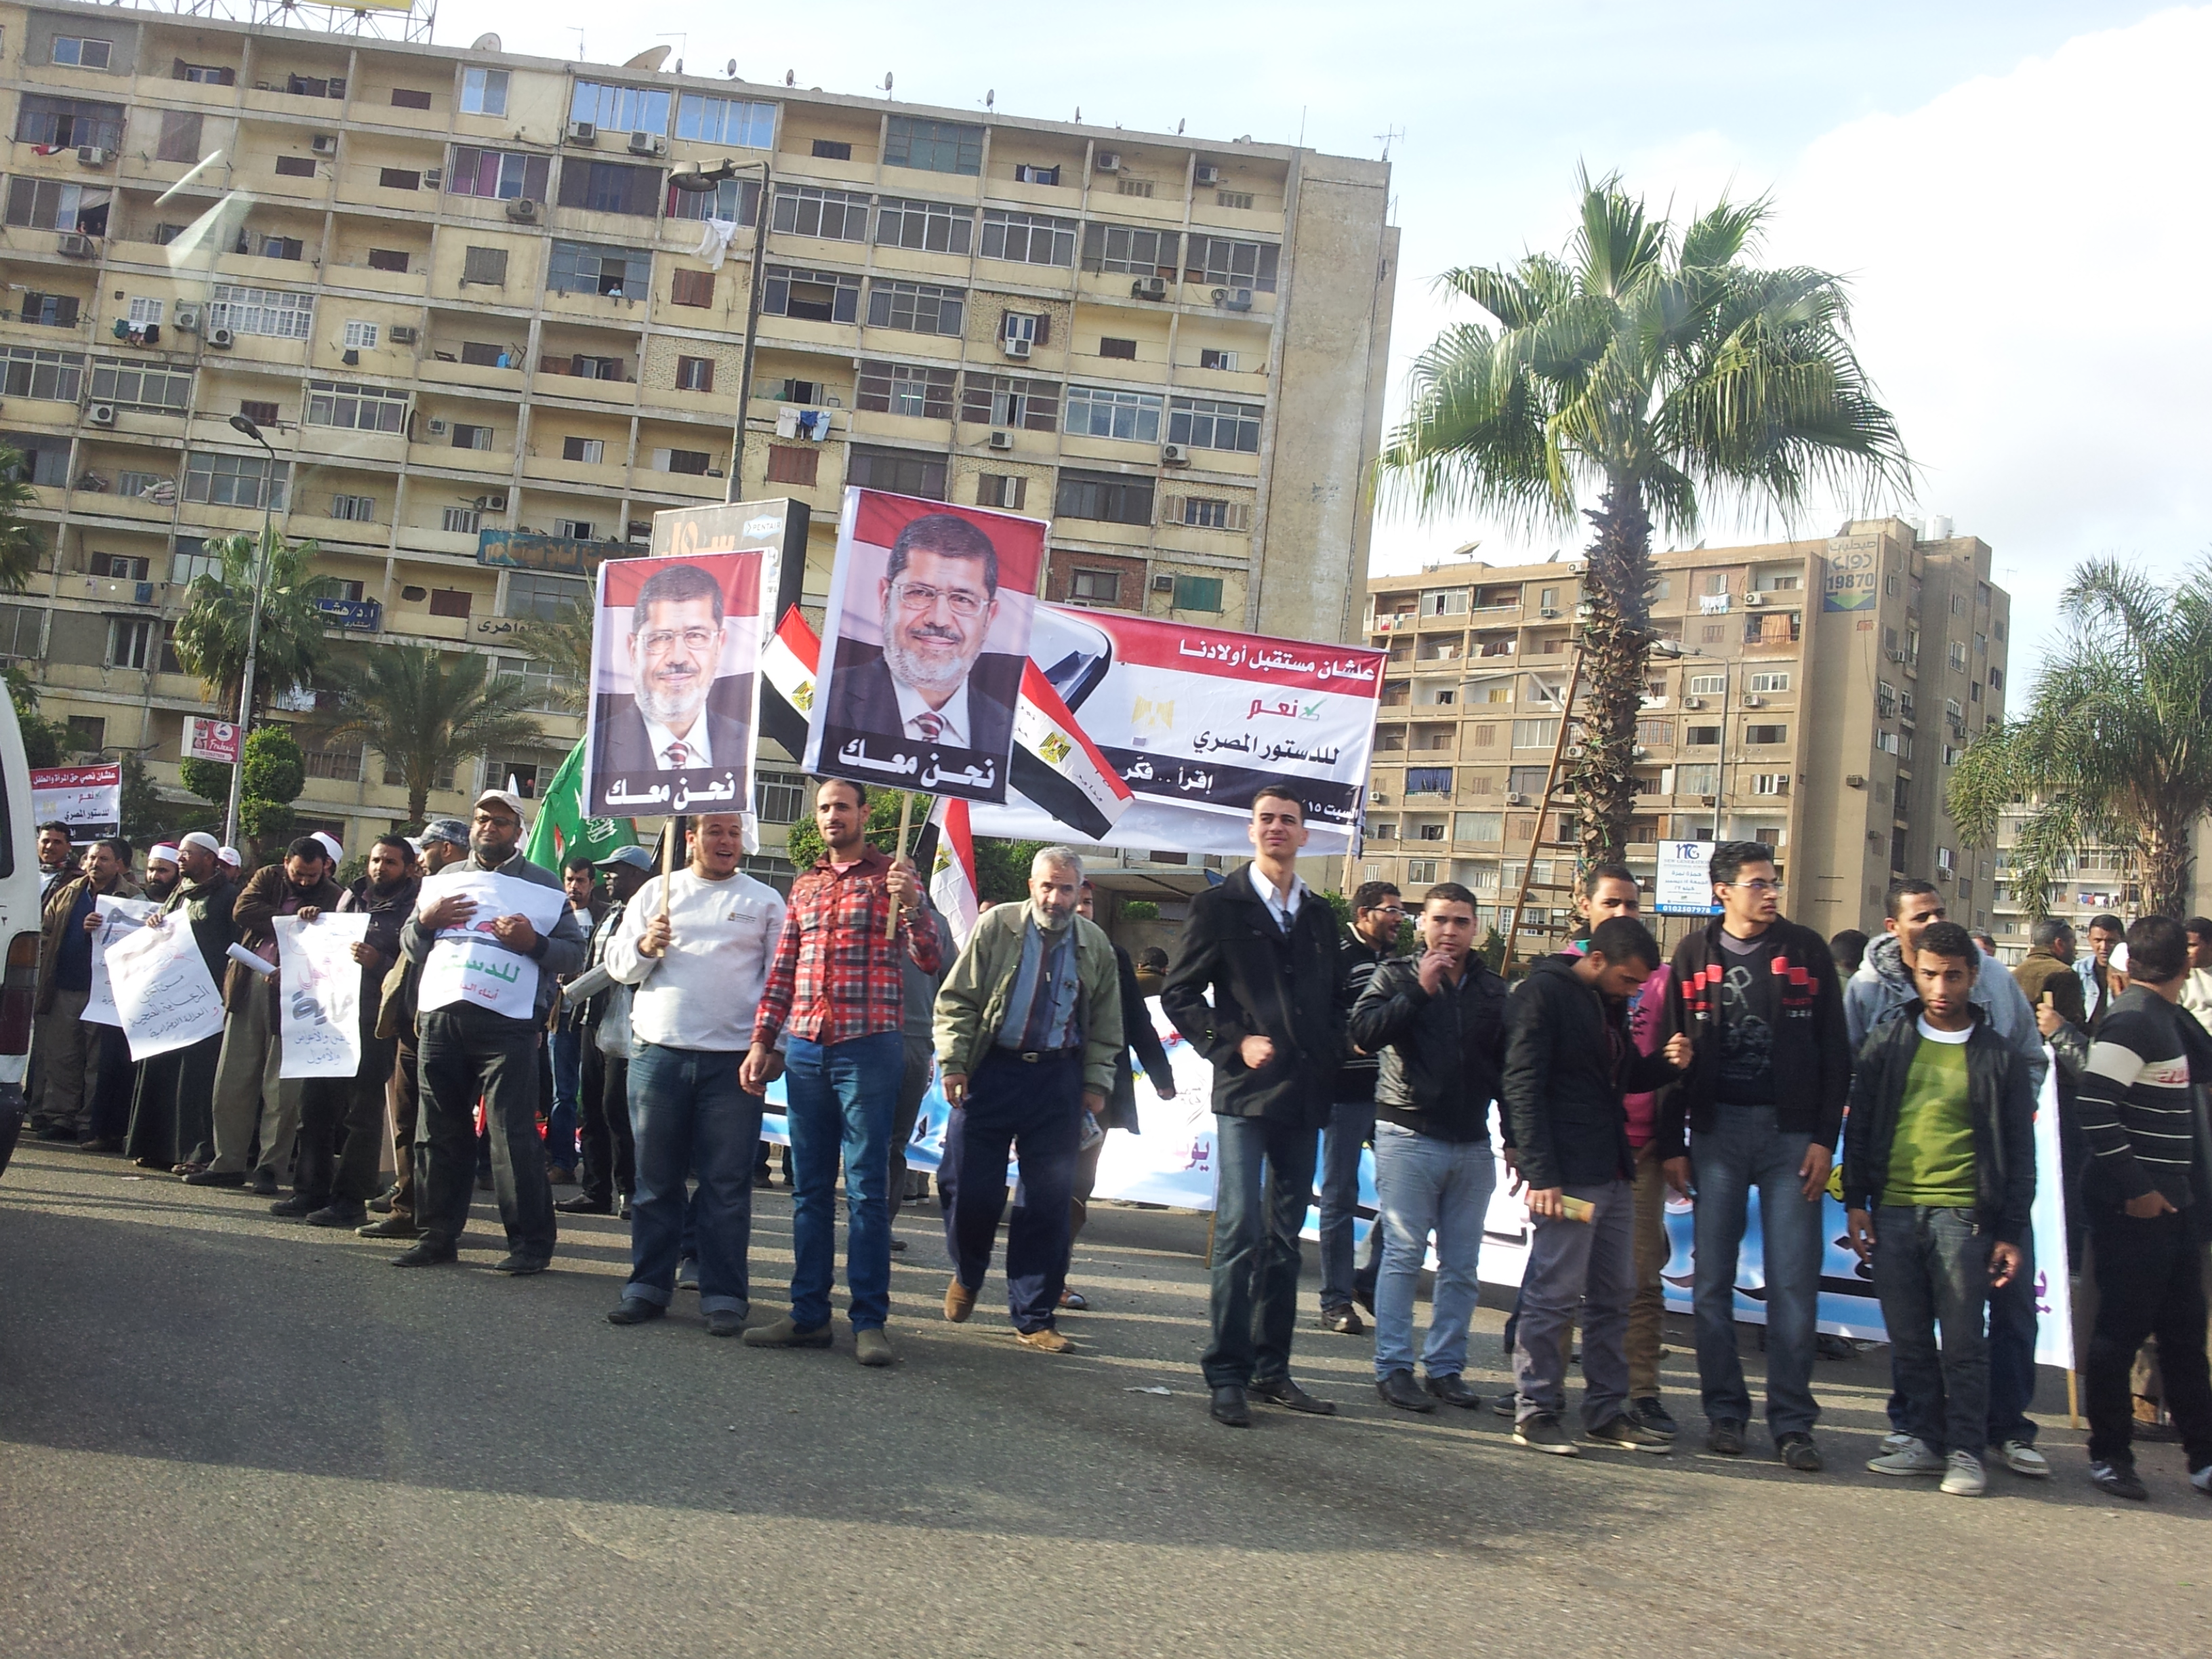 Pro-Morsi supporters at Rabaa Al Adaweya at around 2 p.m.